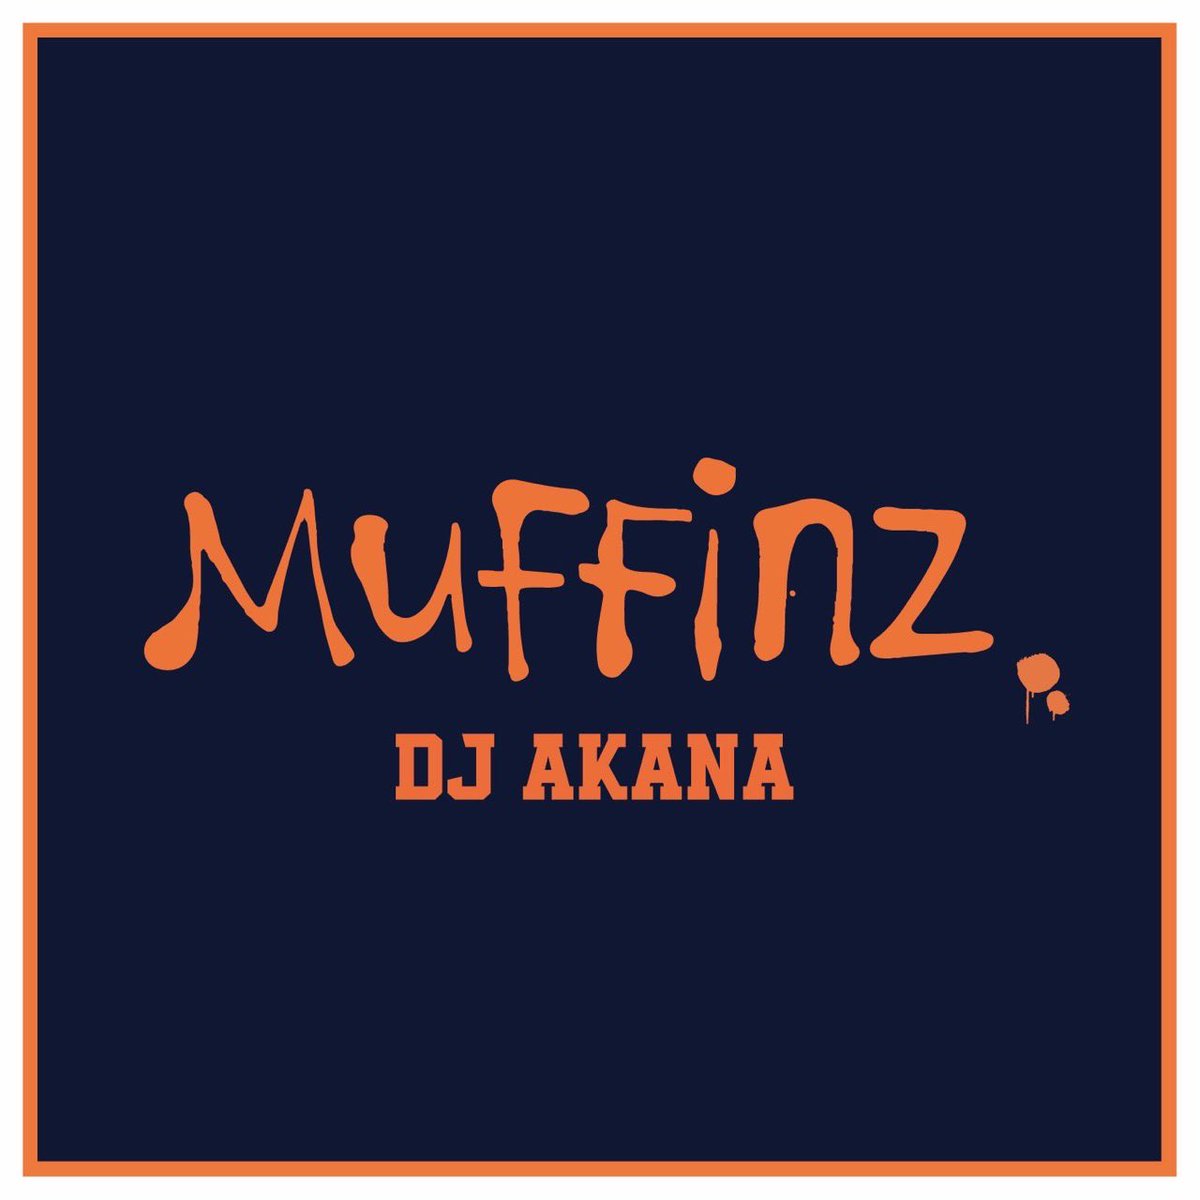 DJ AKANA (アカナ) / MUFFINZ